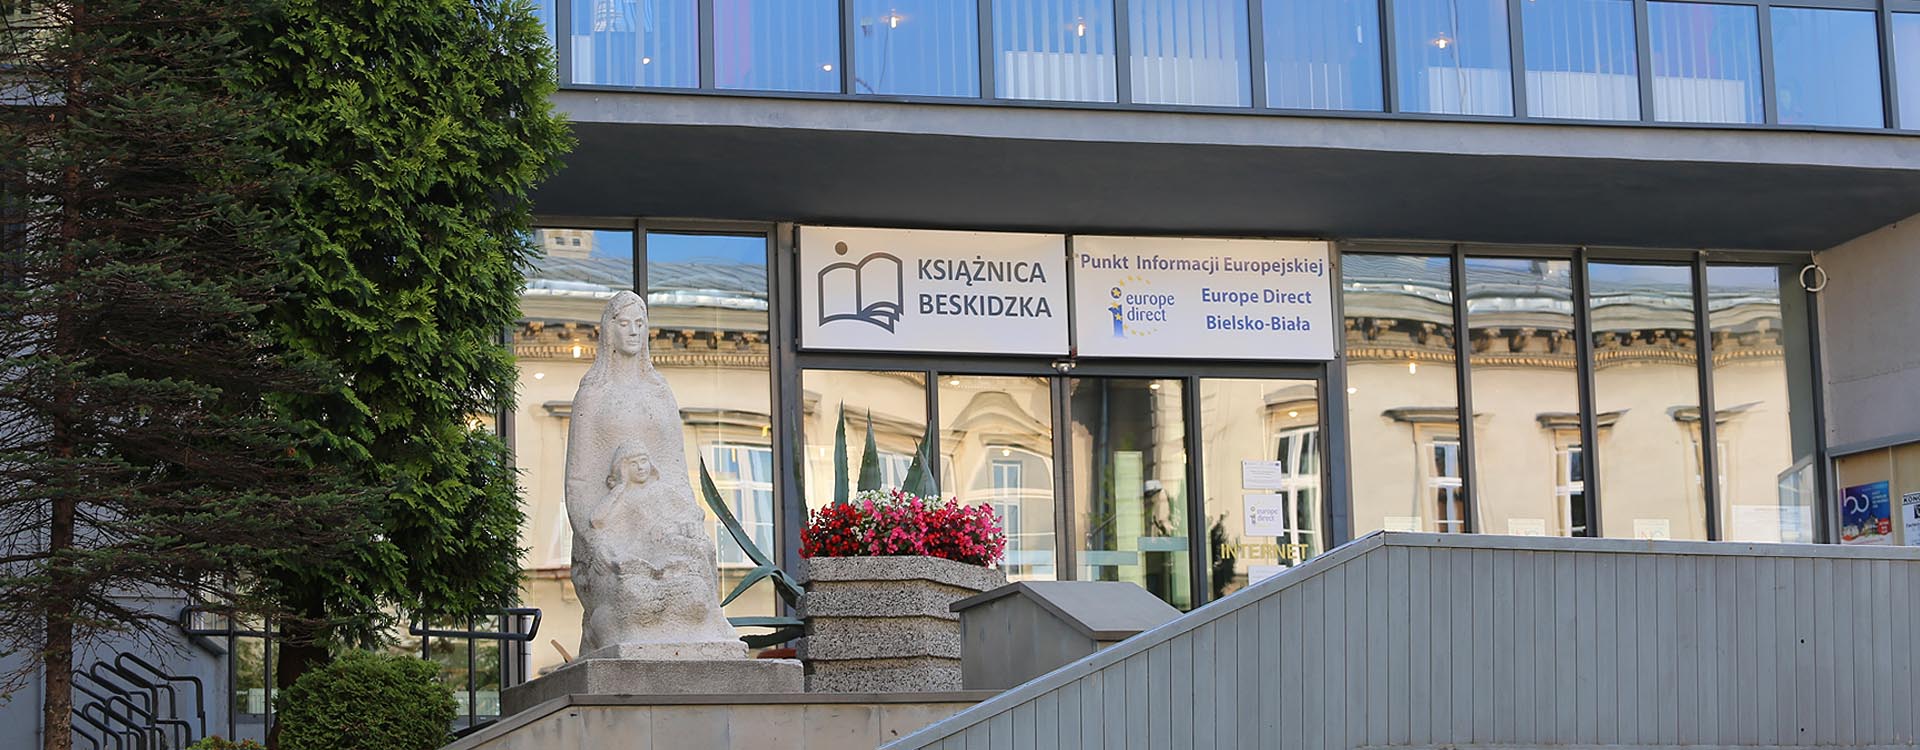 Widoczne jest oszkolone wejście do Książnicy od strony ulicy Słowackiego. Na górze, przy wejściu, po lewej stronie widać posąg oraz donicę z czerwonymi kwiatami. 